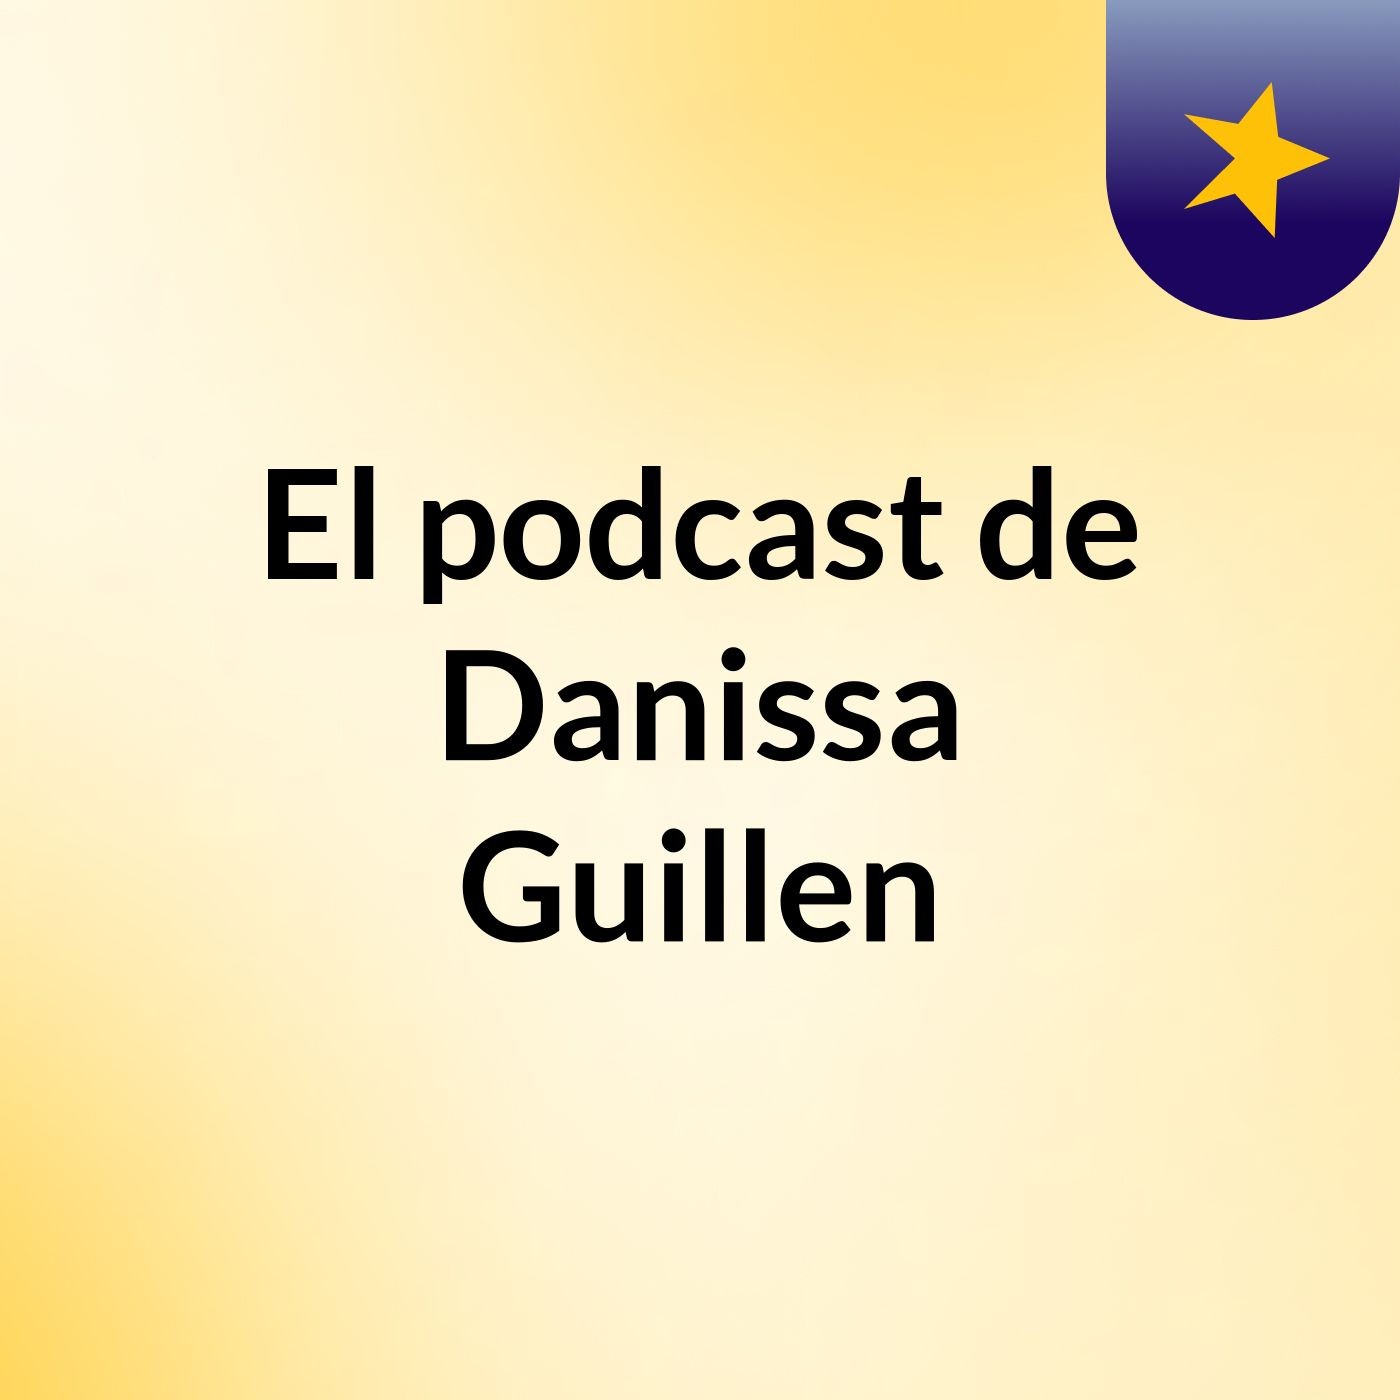 El podcast de Danissa Guillen